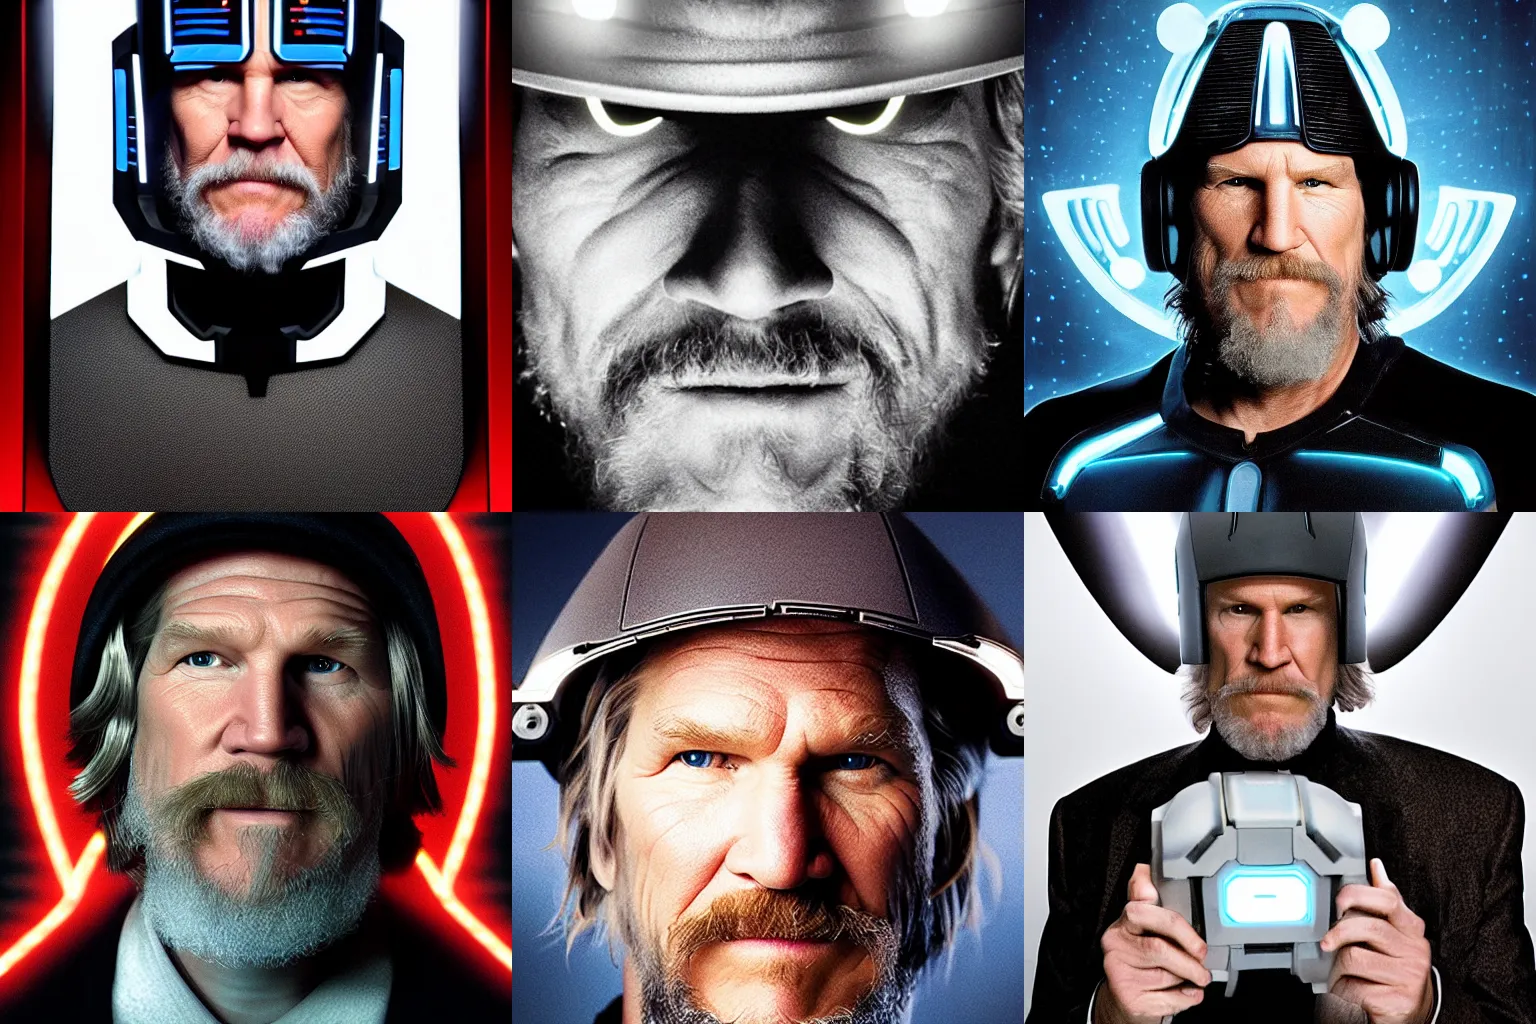 Prompt: portrait jeff bridges as cyborg, tron, photo, tv show, funny hat, realistic, uplight